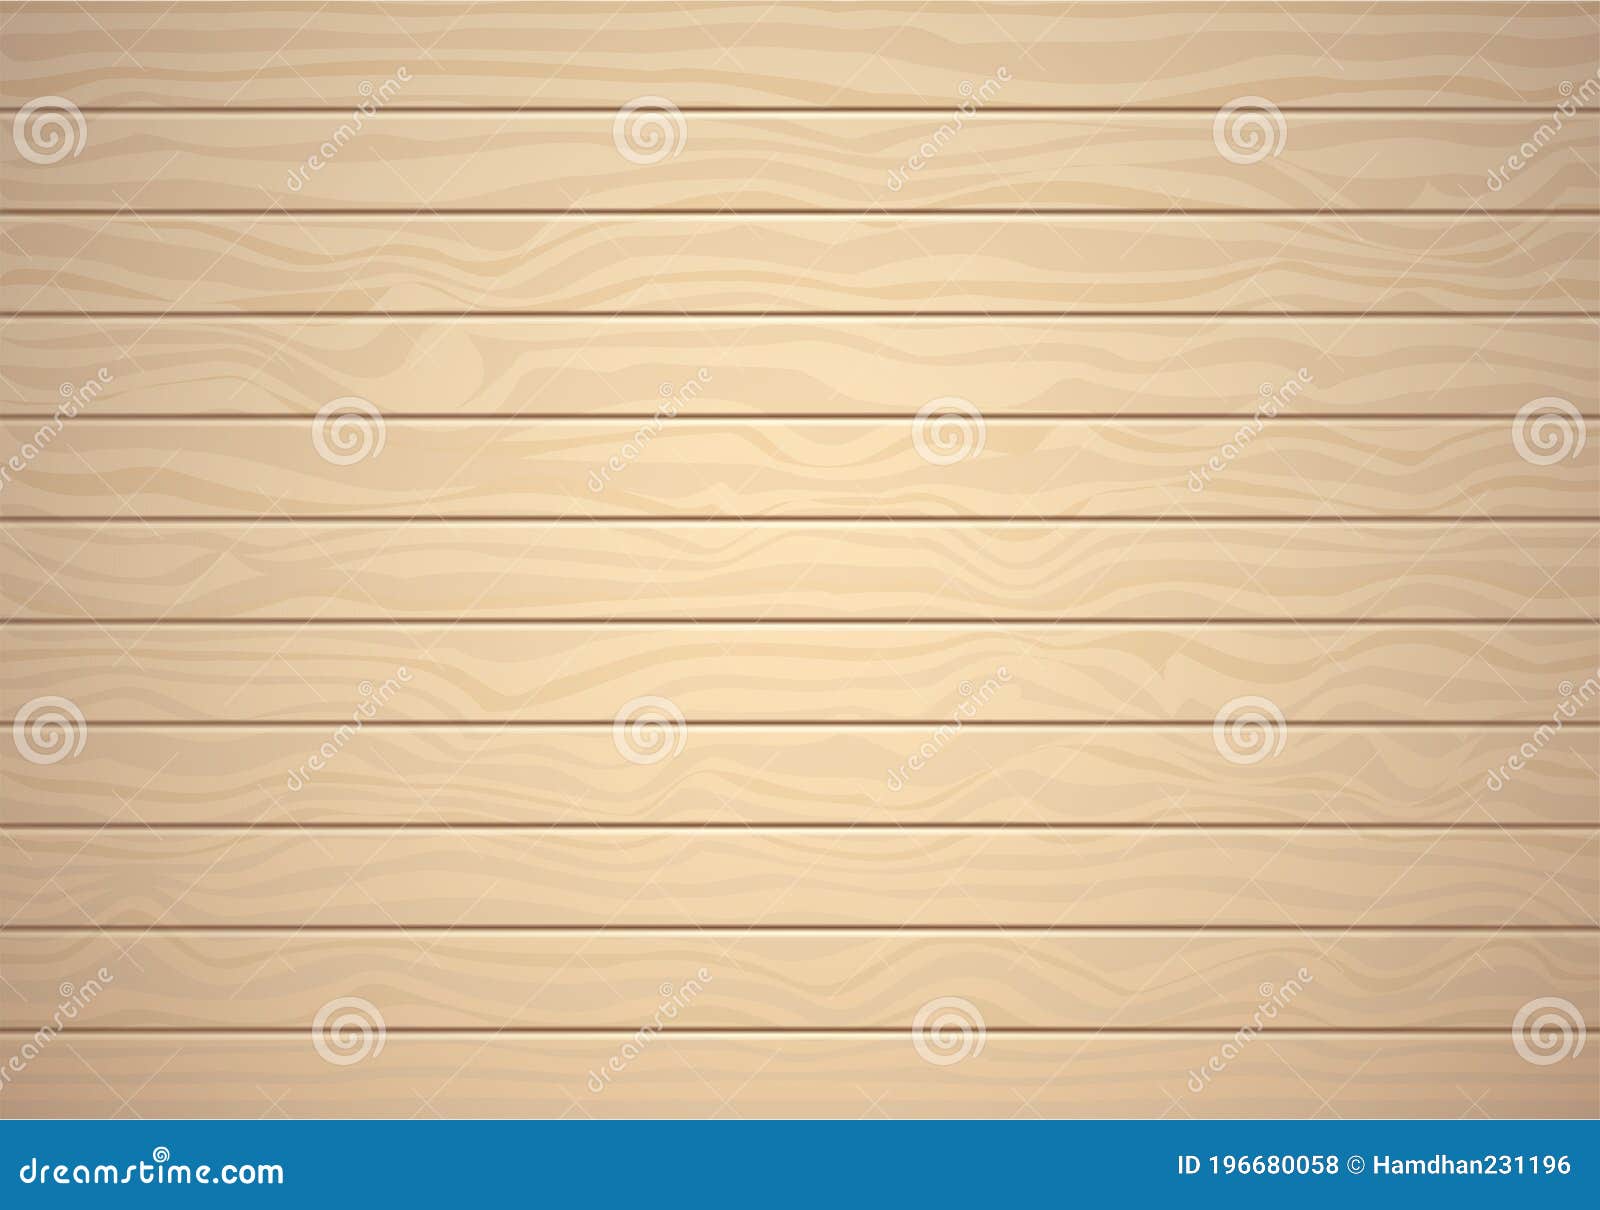 Một nền gỗ đẹp sẽ khiến cho sản phẩm quảng cáo của bạn trở nên chuyên nghiệp và thu hút hơn. Chọn lựa những họa tiết gỗ độc đáo và kết hợp màu sắc phù hợp để thiết kế nền gỗ đẹp mắt cho sản phẩm của bạn. Bạn sẽ không thể tin nổi tầm ảnh hưởng mà một nền gỗ tuyệt đẹp có thể mang lại cho sản phẩm của bạn.